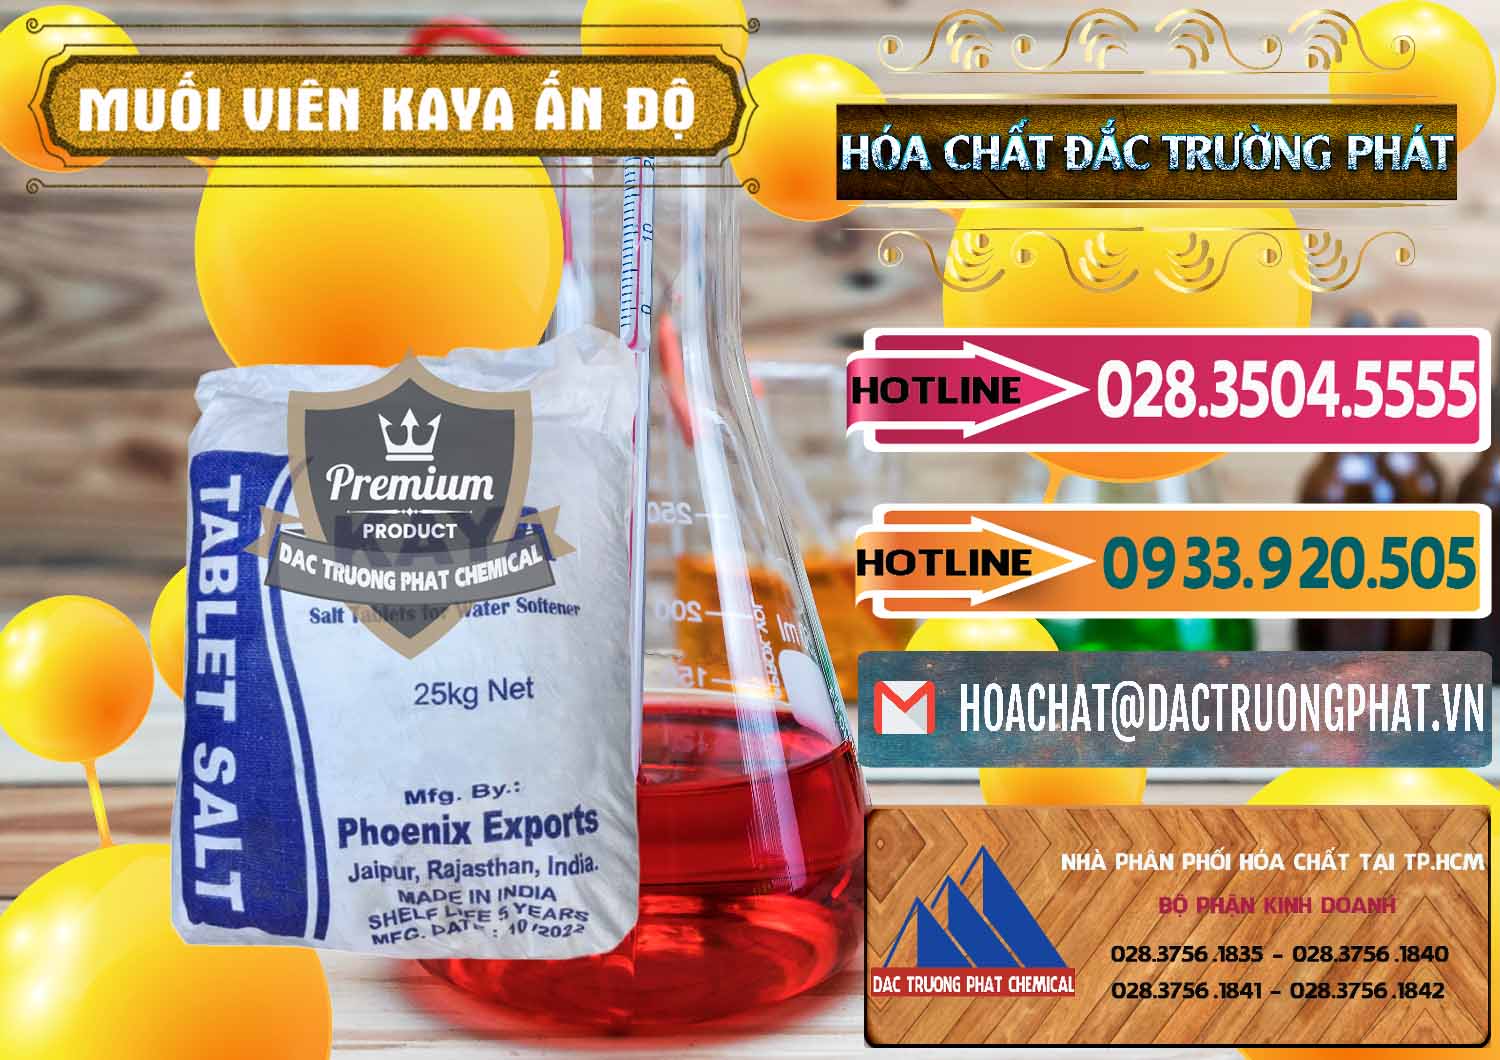 Cty chuyên bán - cung cấp Muối NaCL – Sodium Chloride Dạng Viên Tablets Kaya Ấn Độ India - 0368 - Chuyên cung cấp - phân phối hóa chất tại TP.HCM - dactruongphat.vn